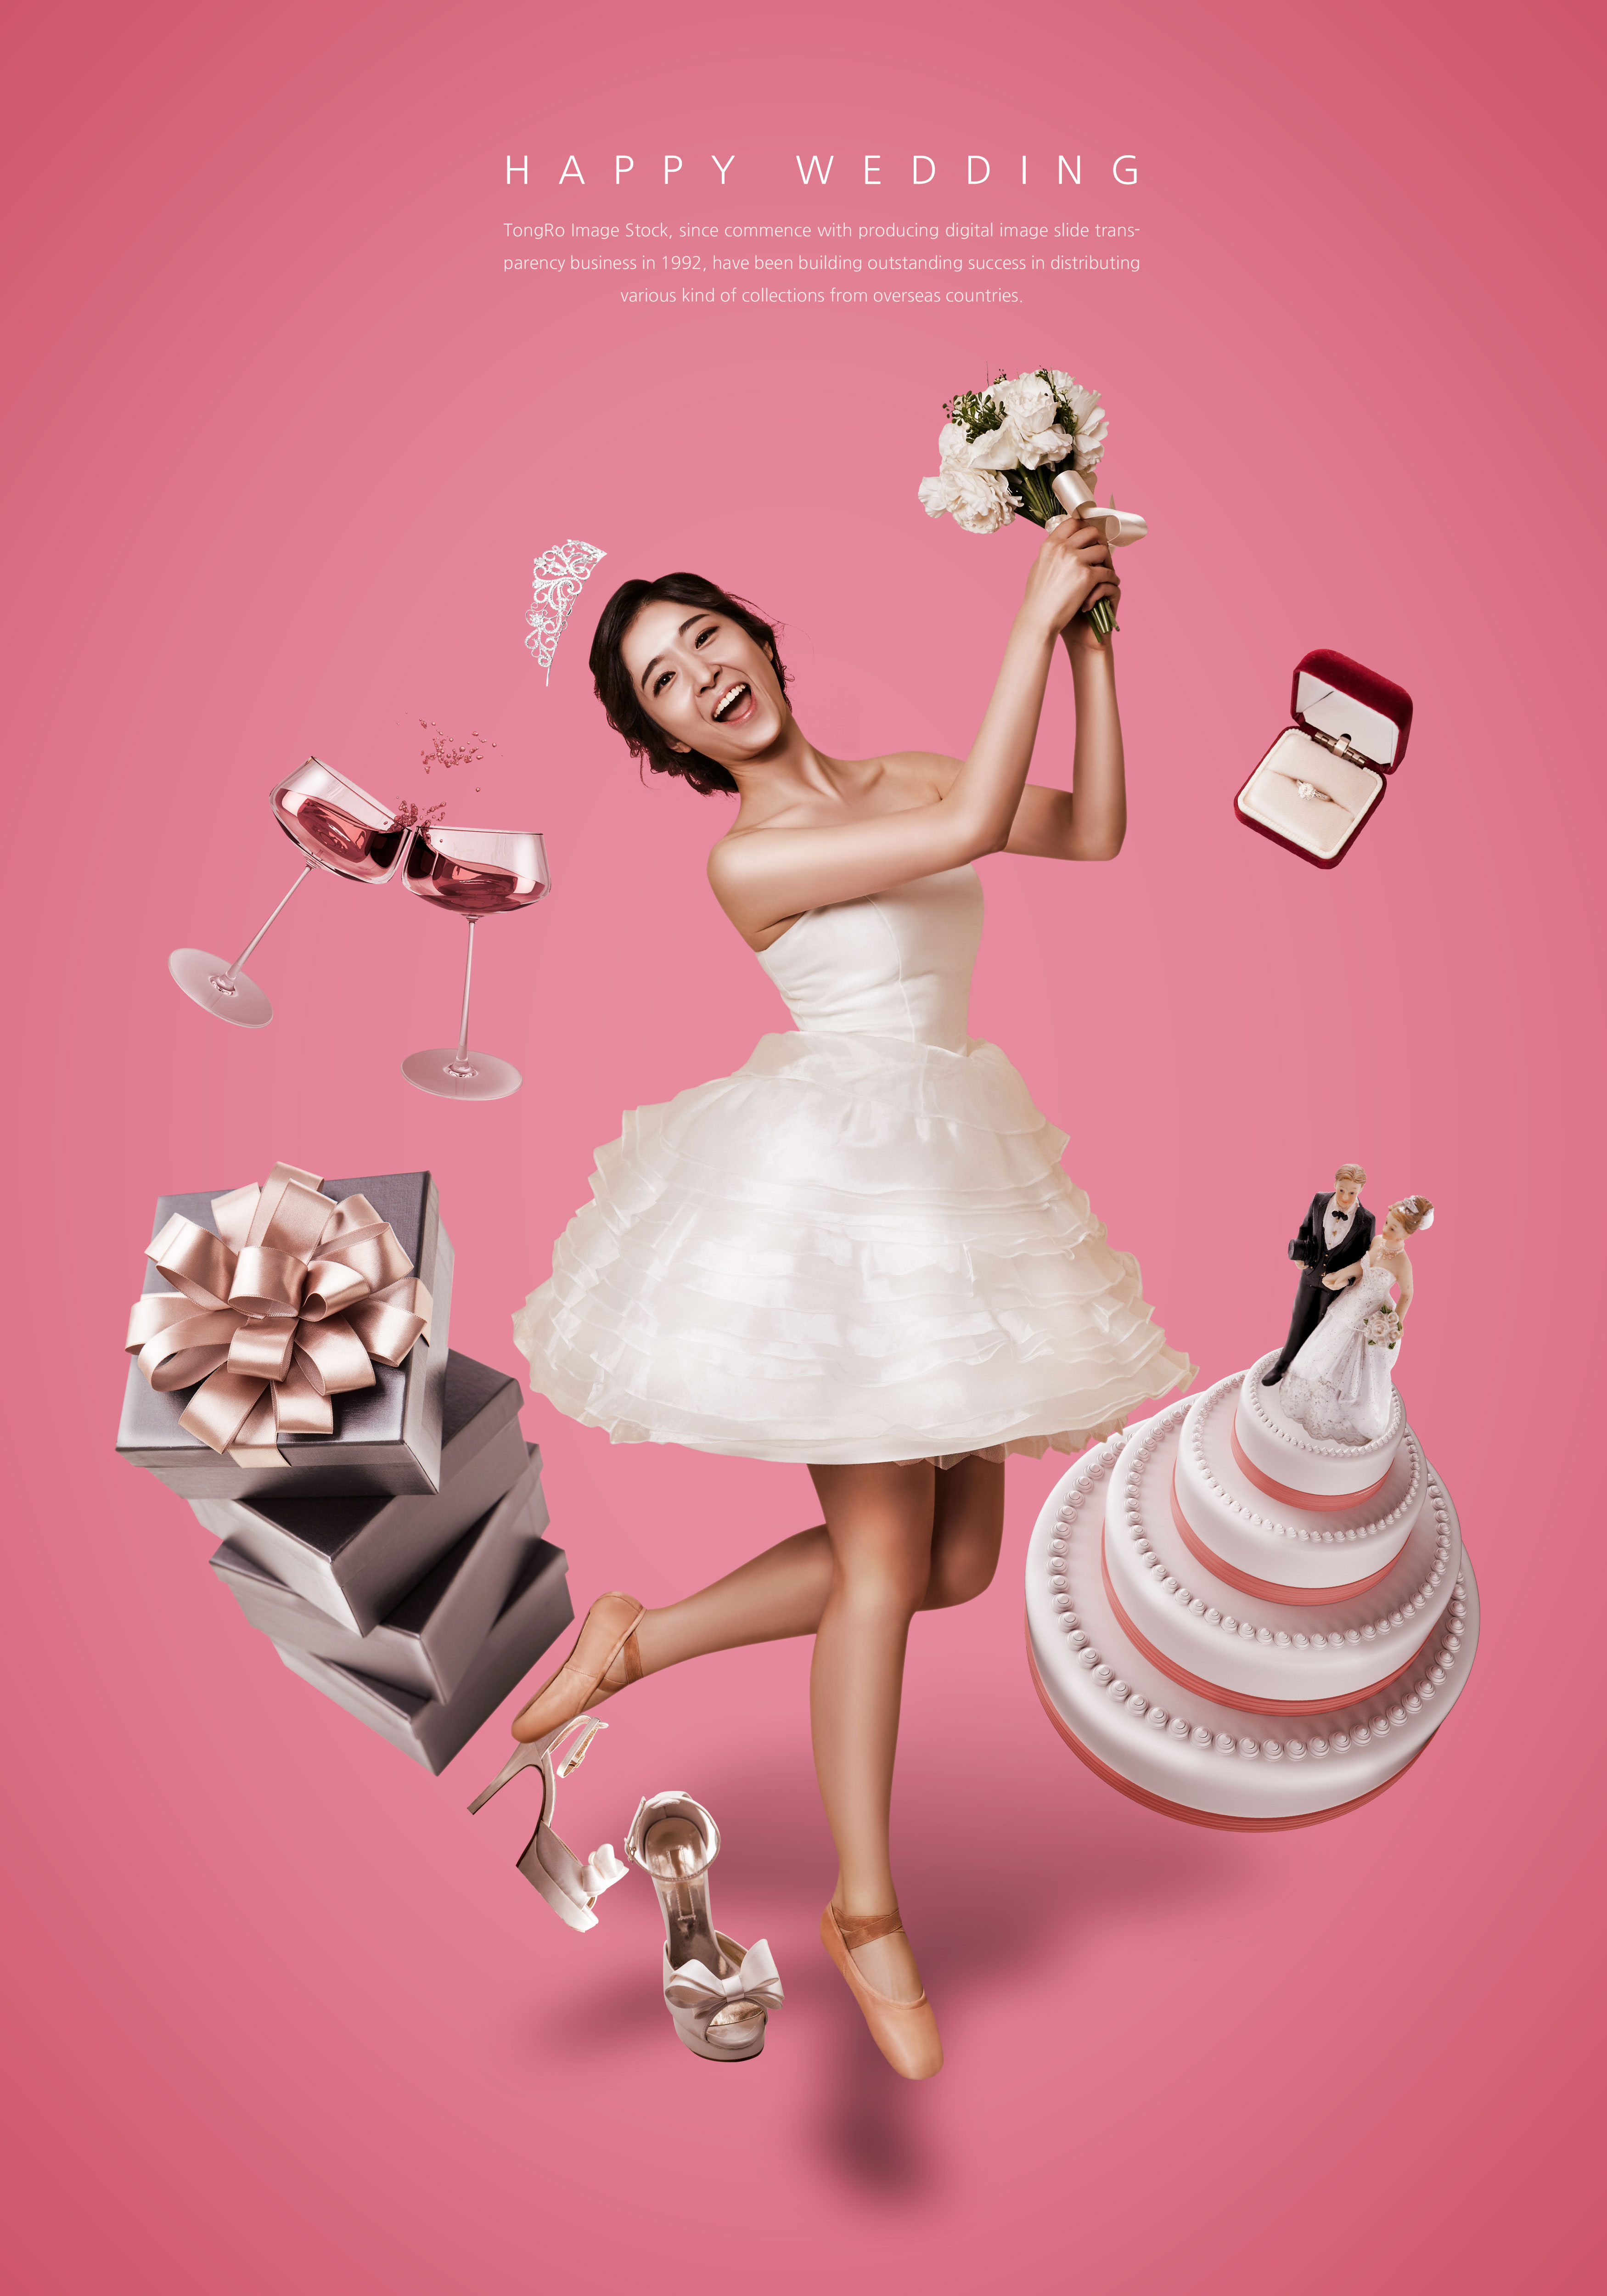 幸福婚礼主题粉色海报psd模板插图